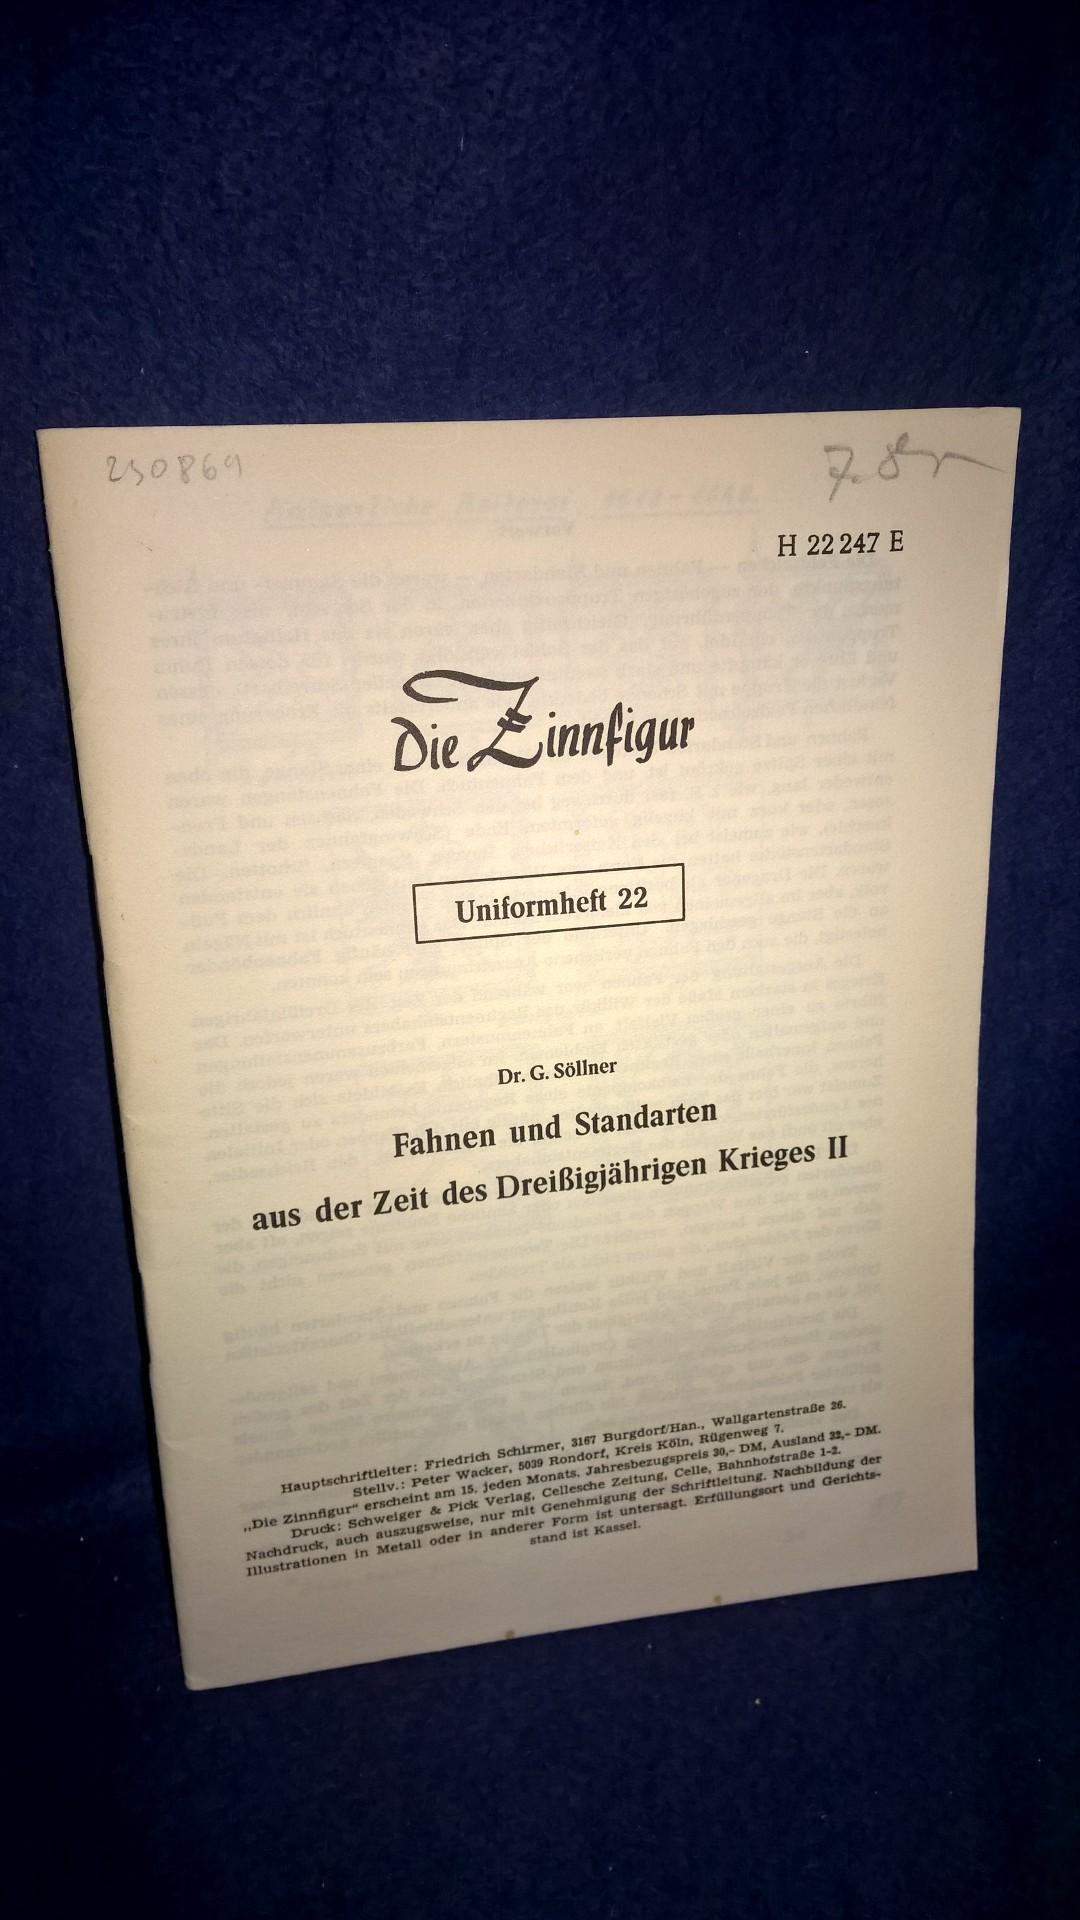 Fahnen und Standarten aus der Zeit des Dreißigjährigen Krieges, II. Teil. Aus der Reihe: Die Zinnfigur -Uniformheft 22 -. Selten.